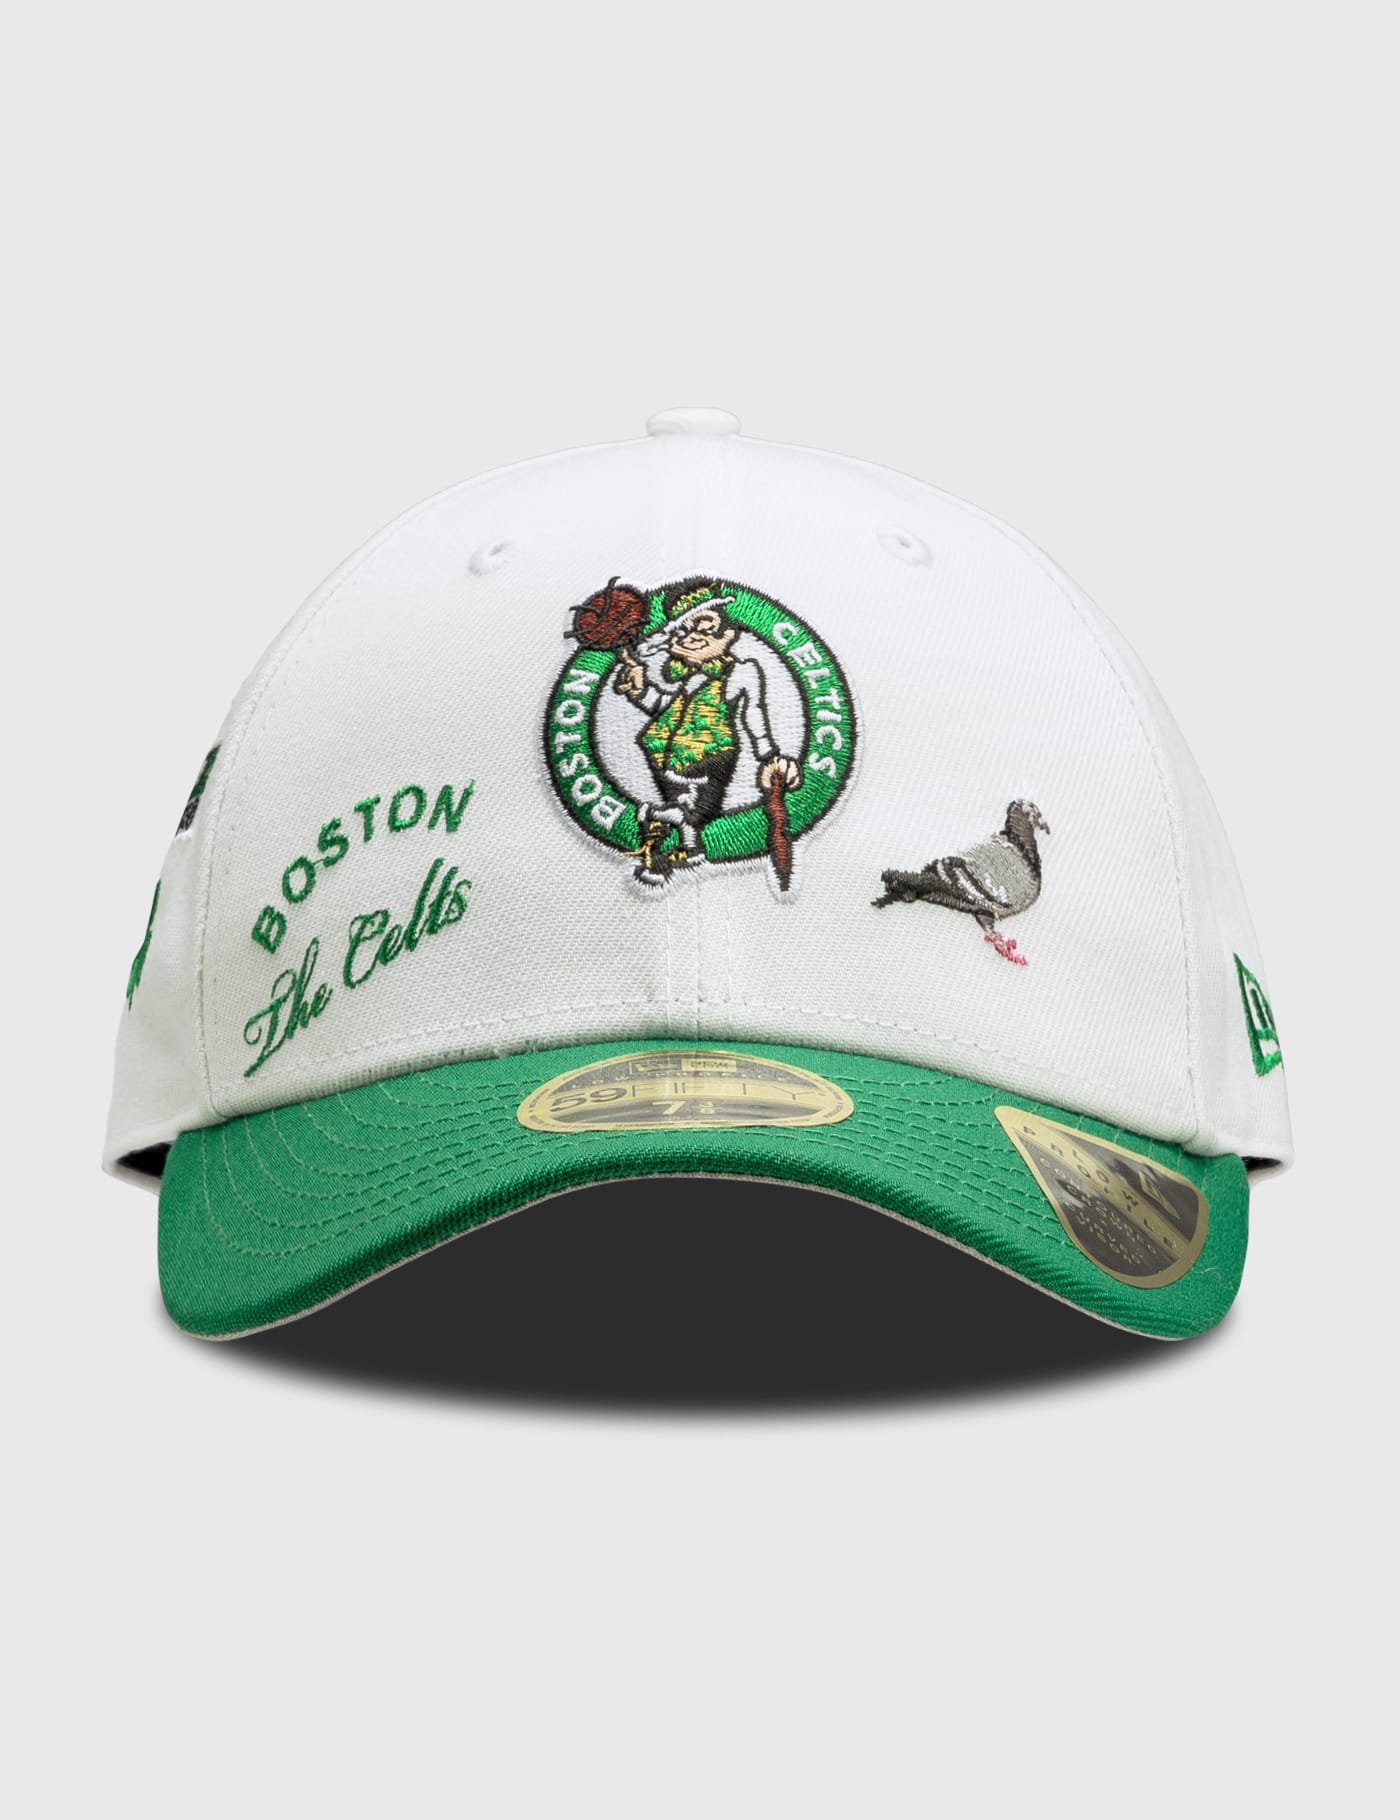 New Era - Staple x NBA Boston Celtics 59FIFTY Cap | HBX - Globally